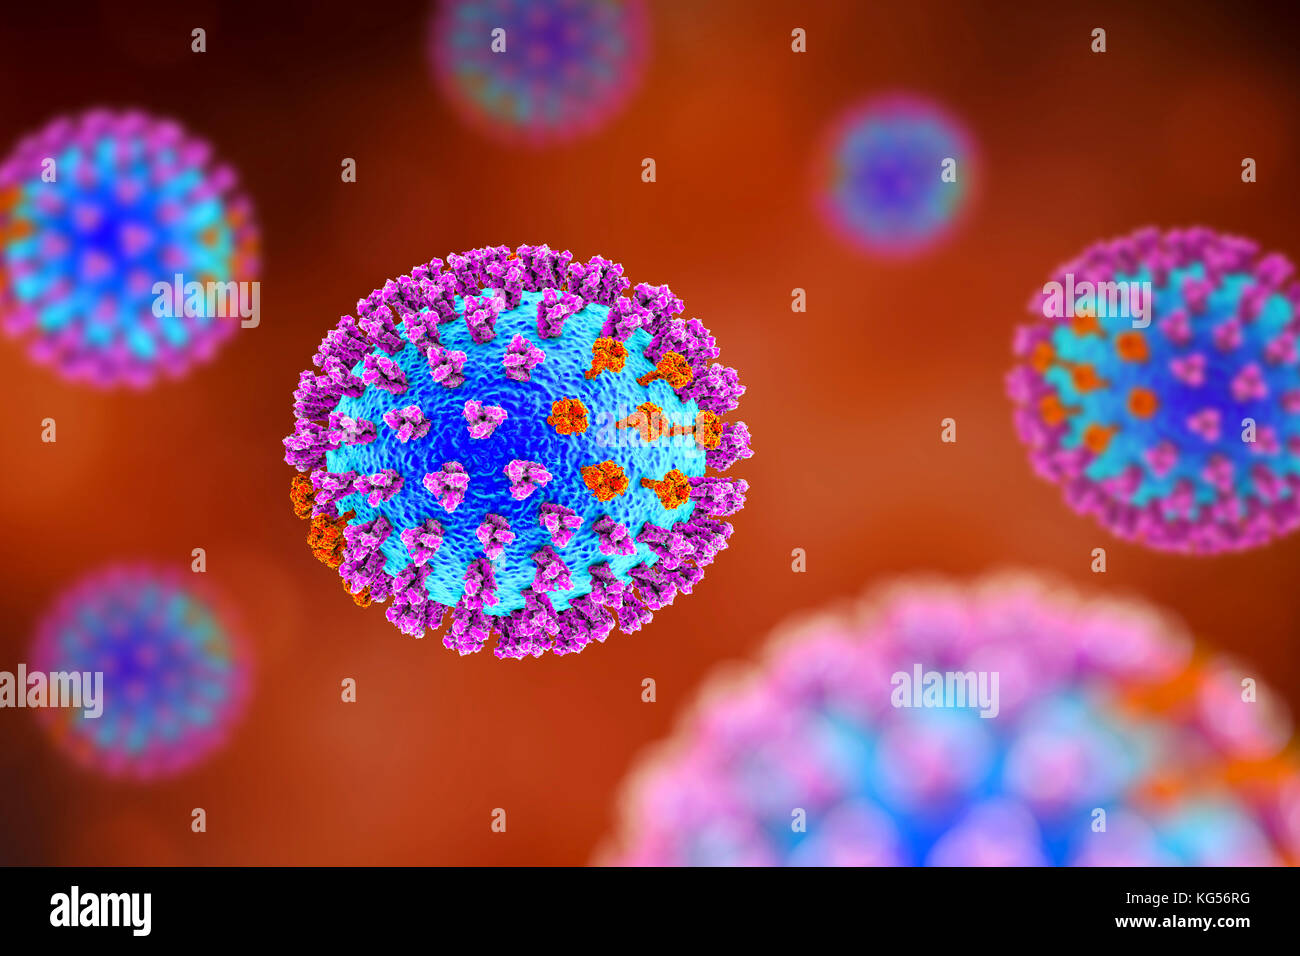 Les virus de la grippe, l'illustration de l'ordinateur. Chaque virus est constitué d'un noyau d'ARN (acide ribonucléique) le matériel génétique entouré par une couche de protéines (bleu). Intégré dans les armoiries sont des protéines de surface (pics). Il y a deux types de protéines de surface, l'hémagglutinine (violet) et de la neuraminidase (orange), et chaque existe dans plusieurs sous-types. Les deux protéines de surface sont associées à la pathogénicité d'un virus. L'hémagglutinine se lie aux cellules de l'hôte, ce qui permet au virus d'entrer et de les reproduire. La neuraminidase permet à de nouvelles particules pour quitter l'hôte après la réplication. Banque D'Images